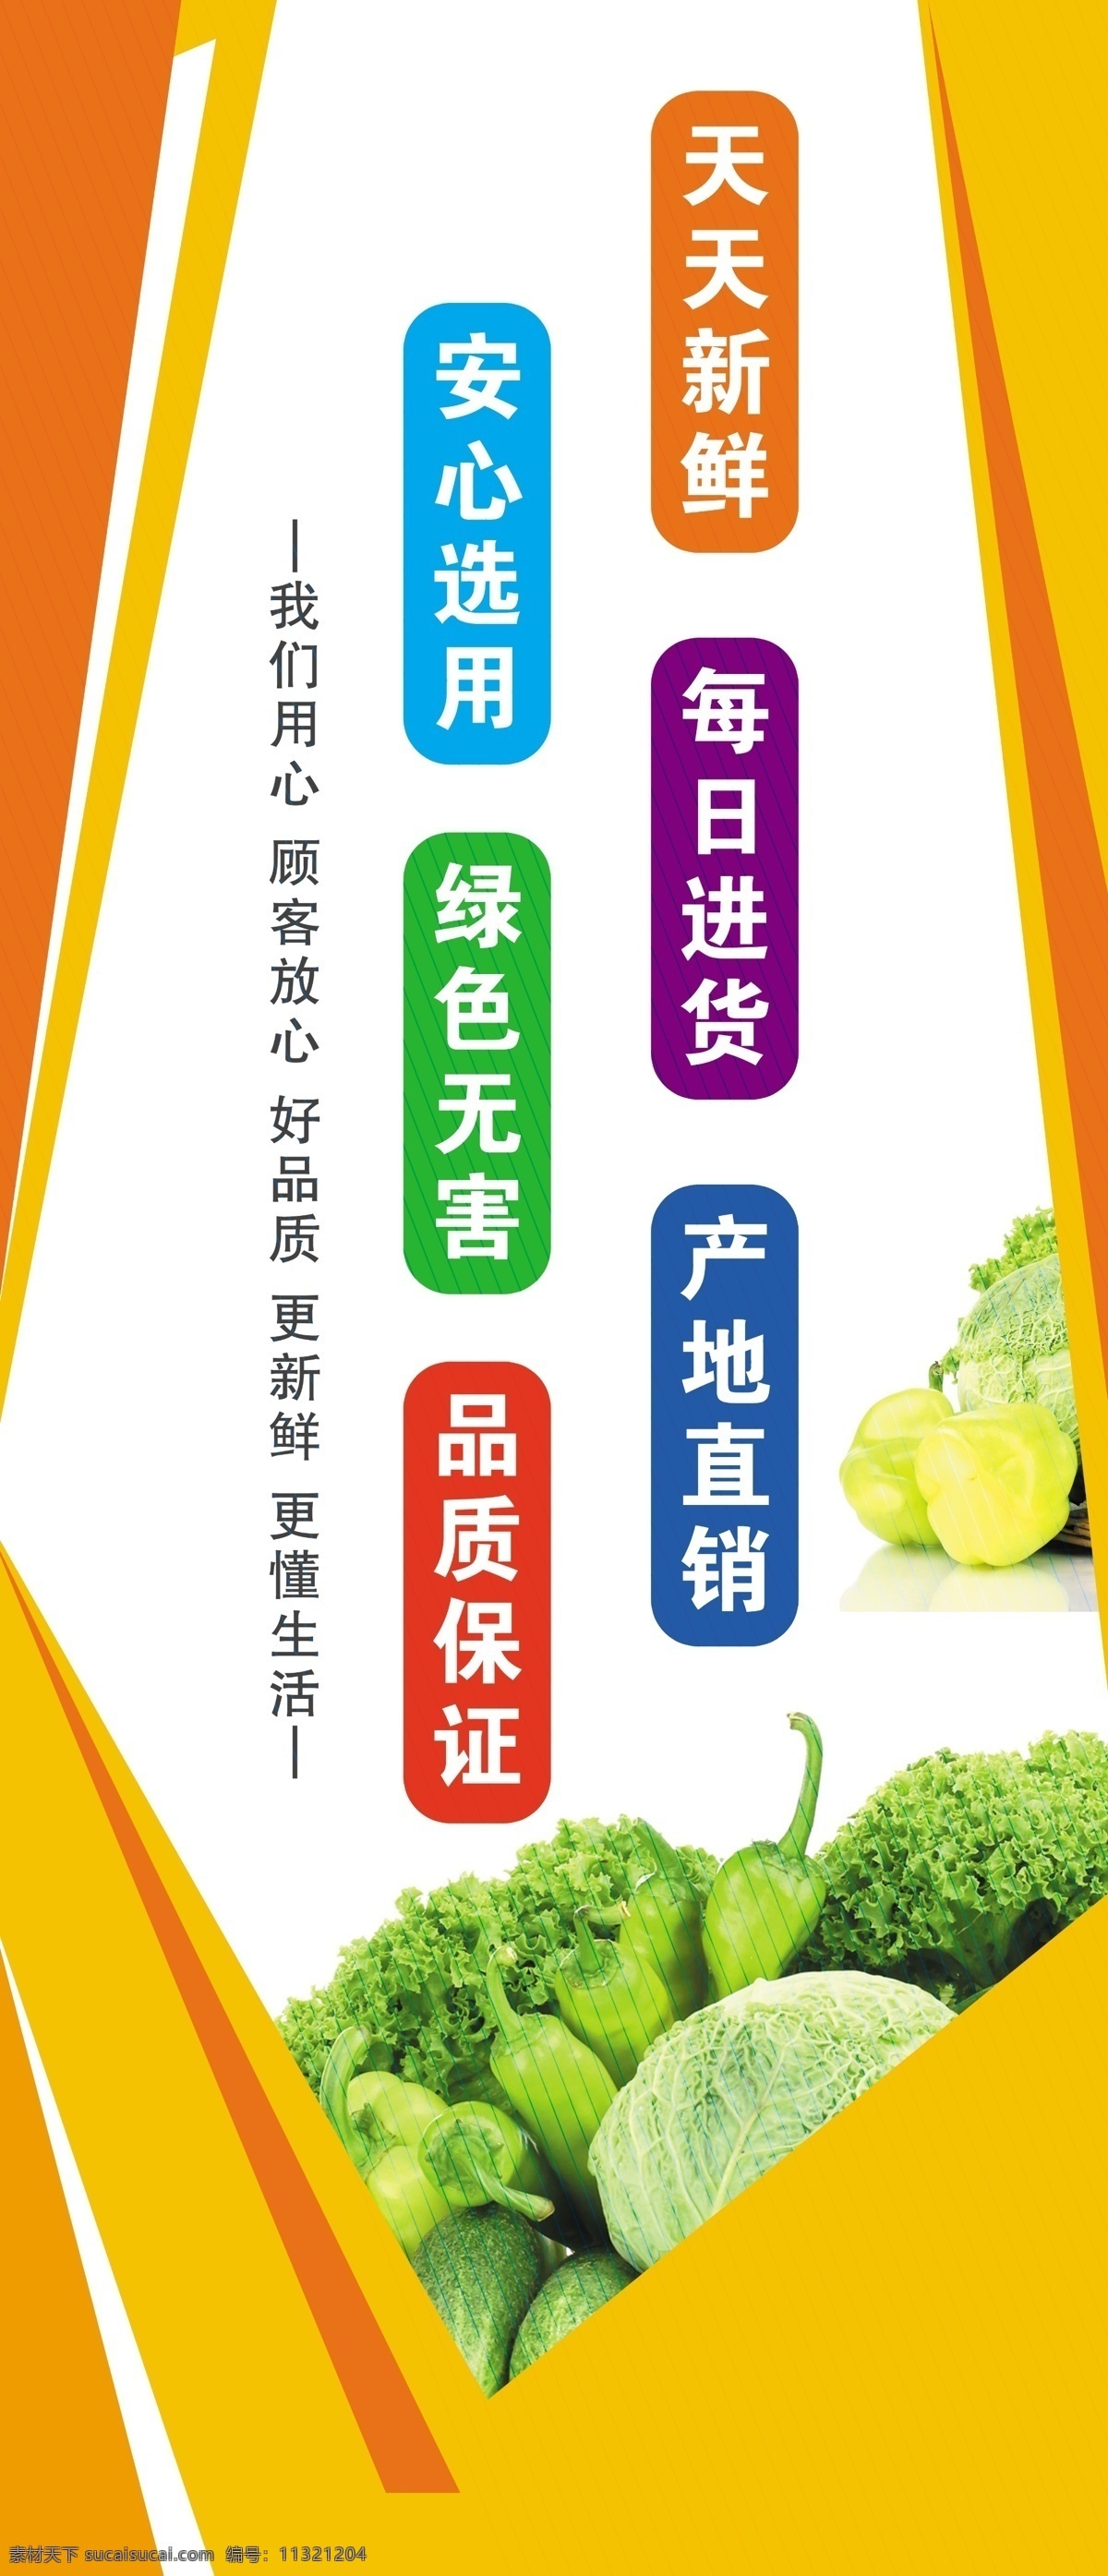 超市宣传 超市广告 超市理念 蔬菜 彩色背景 彩色展板 宣传口号 宣传标语 服务周到 品质保证 天天新鲜 每日进货 分层